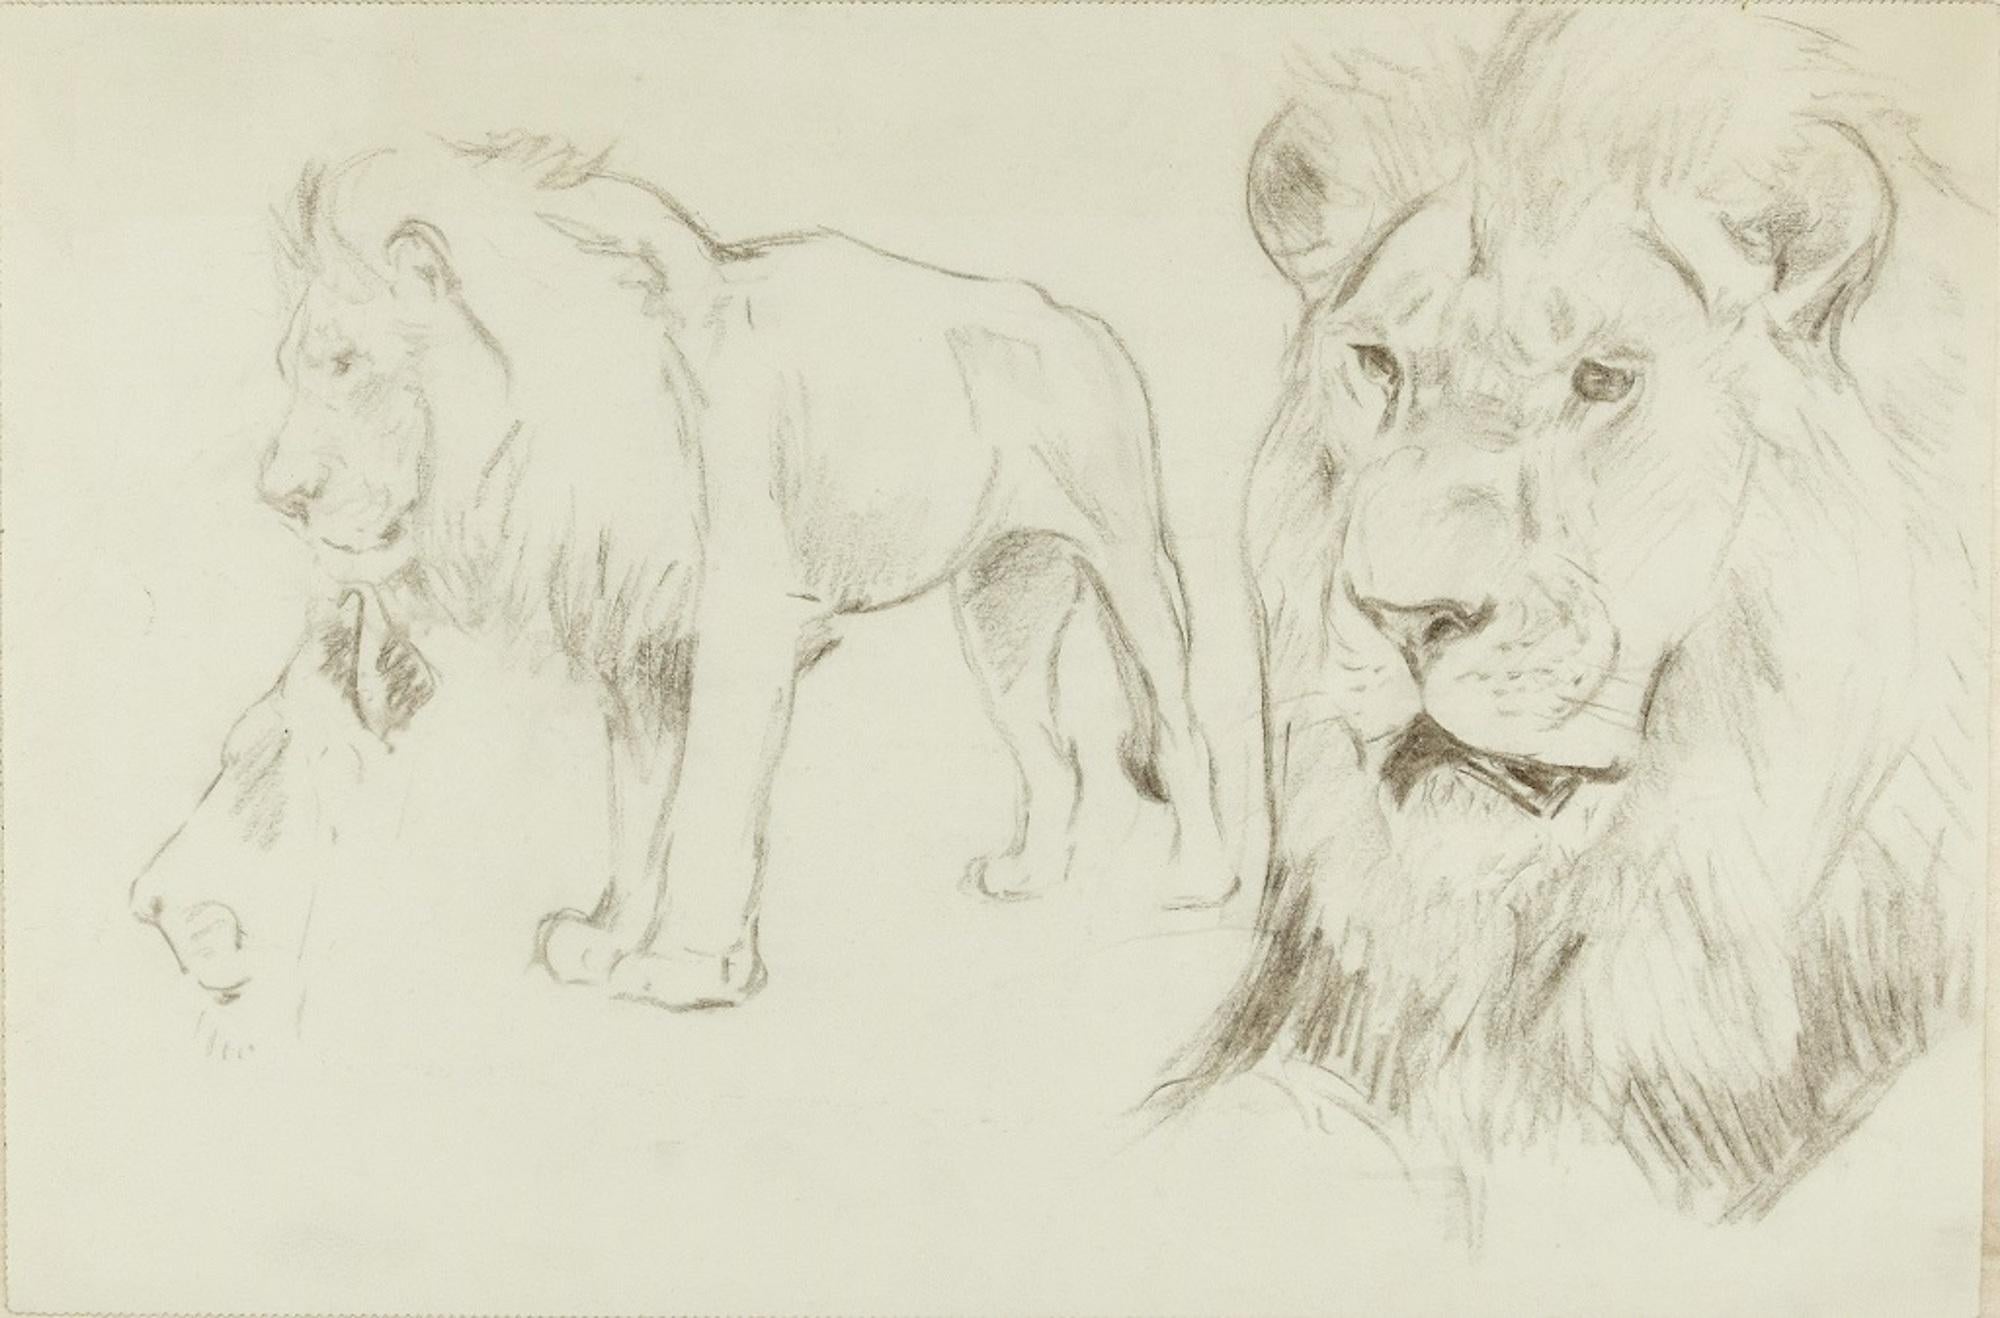 Figurative Art Wilhelm Lorenz - Présentation d'un lion - dessin original au crayon par Willy Lorenz - années 1940